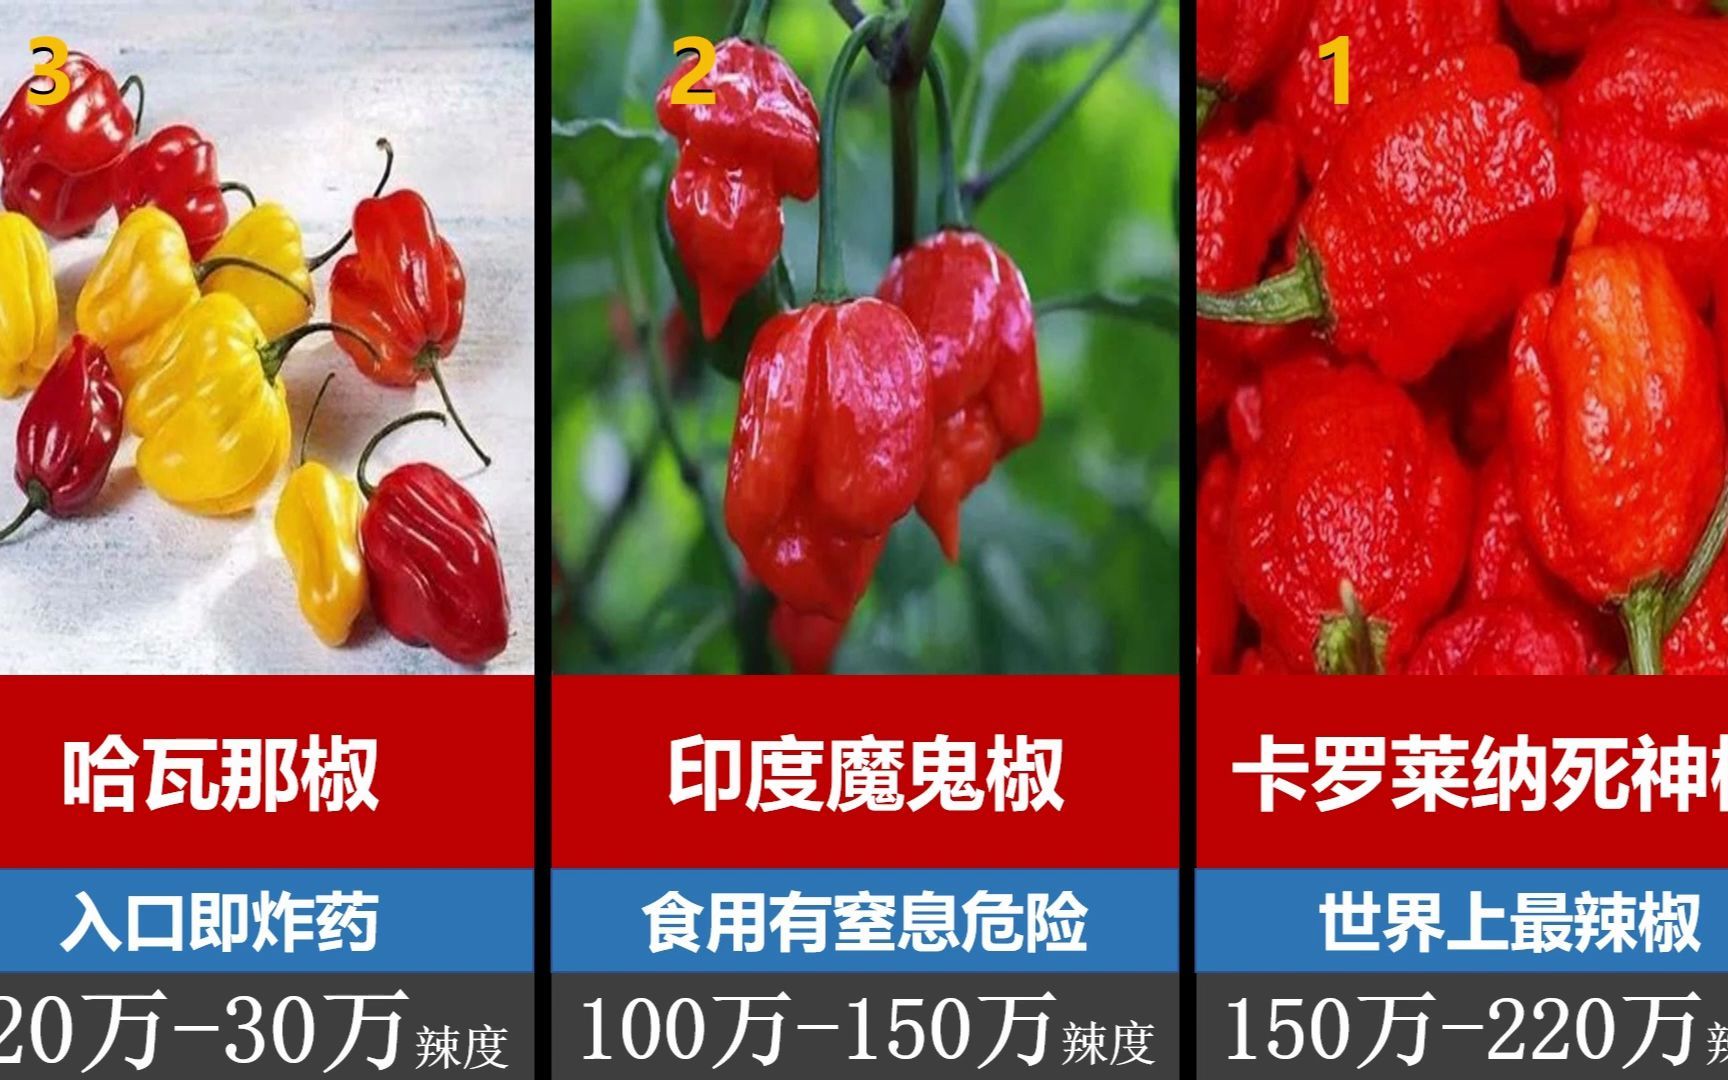 世界上辣椒的辣度排名